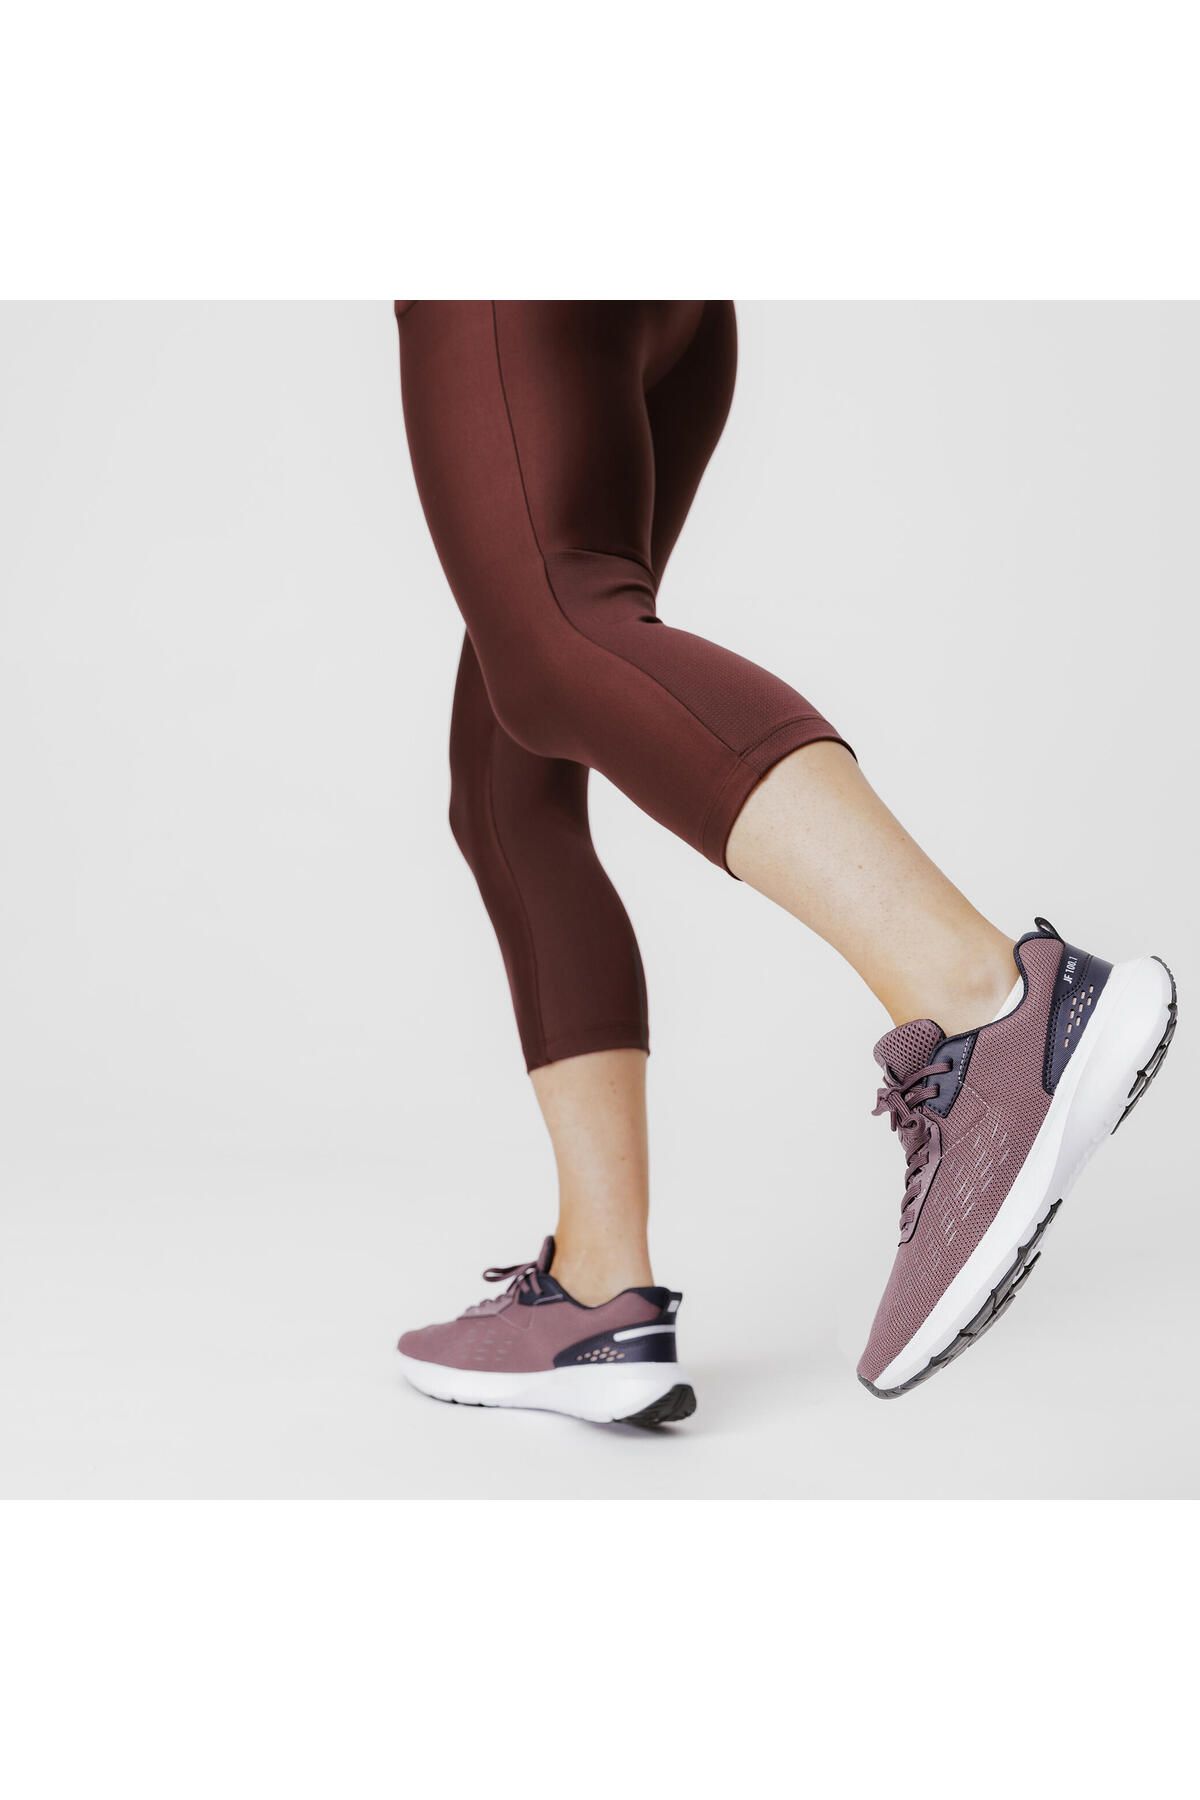 Decathlon Kadın Spor Ayakkabısı Koşu Ayakkabısı Hafif Esnek Köpük Darbe Emen Taban Güçlü Kavrama - karbon gri